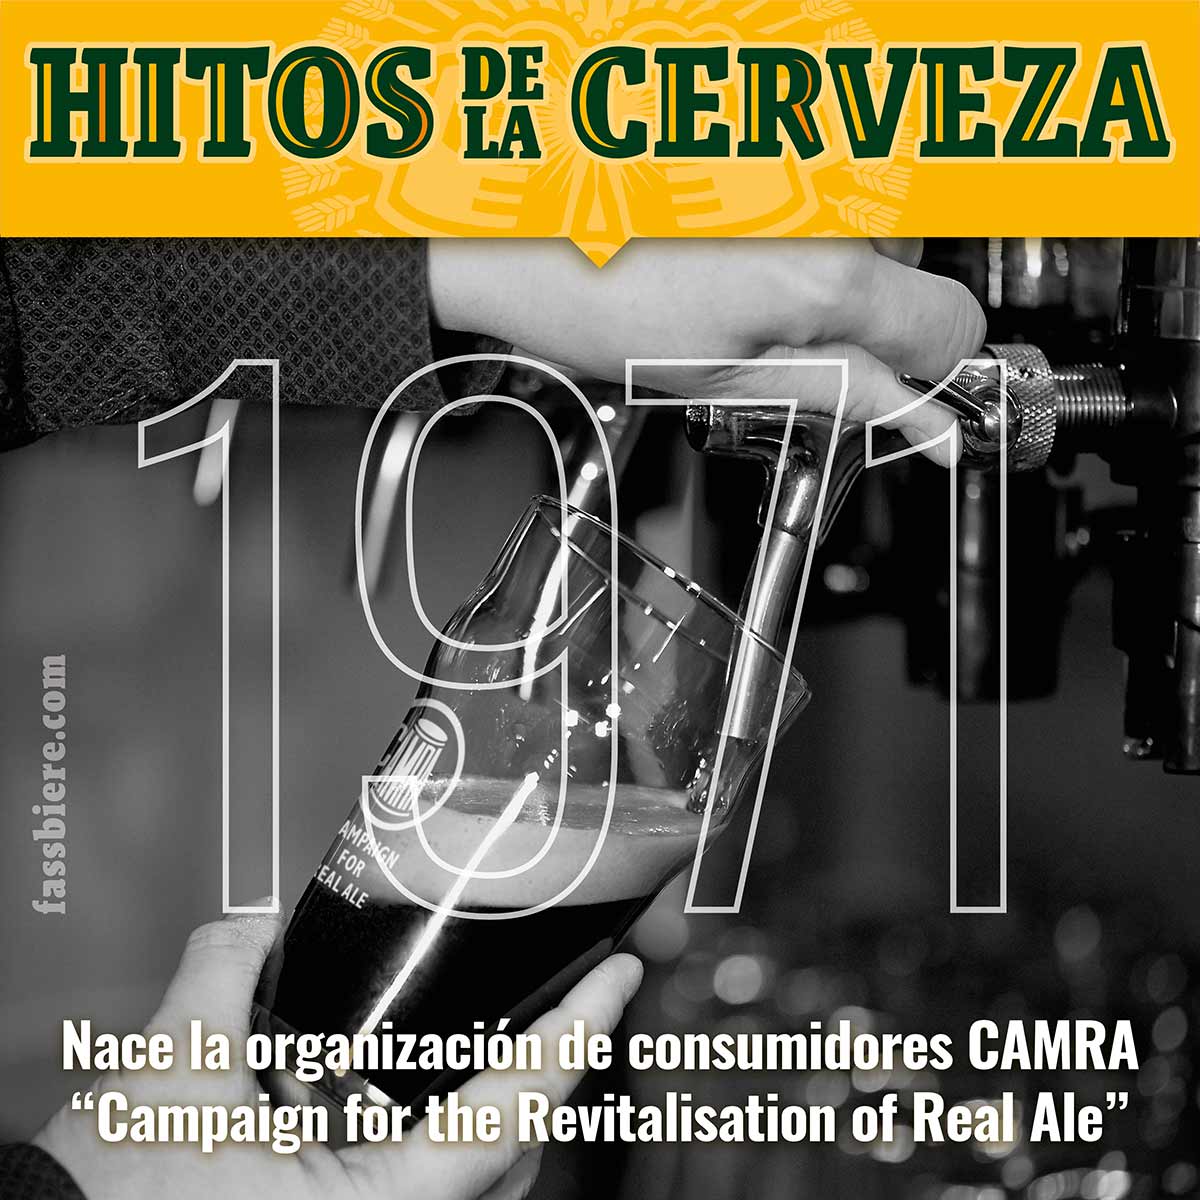 Historia de la cerveza: 1971, se constituye CAMRA, “Campaign for Real Ale”, la organización de consumidores creada para revitalizar la auténtica cerveza ale británica.